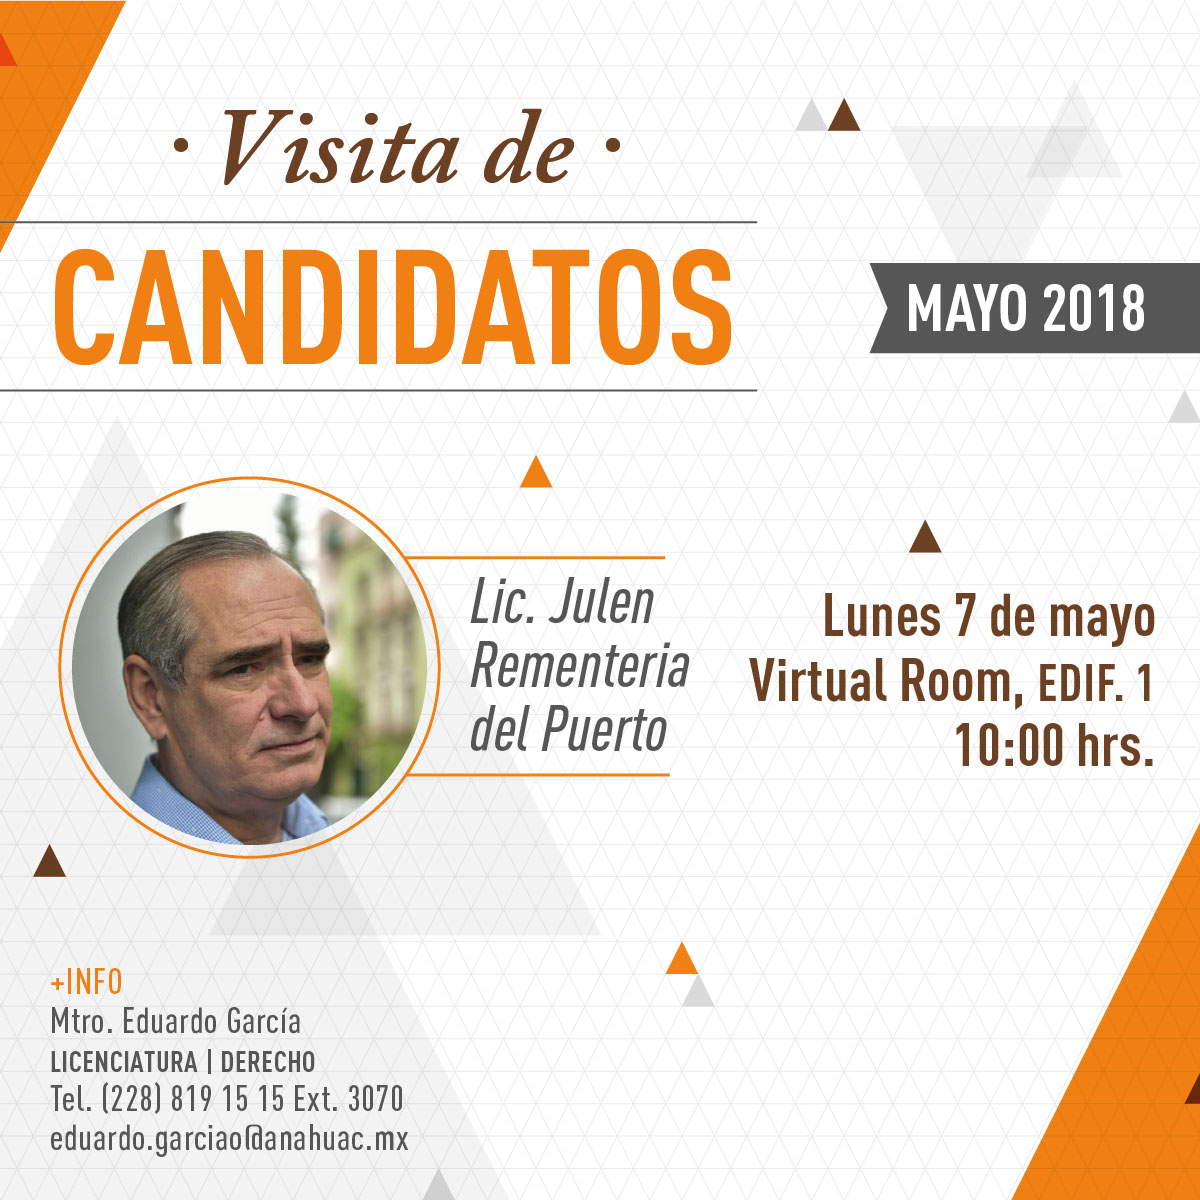 Visita de Candidatos: Elecciones 2018